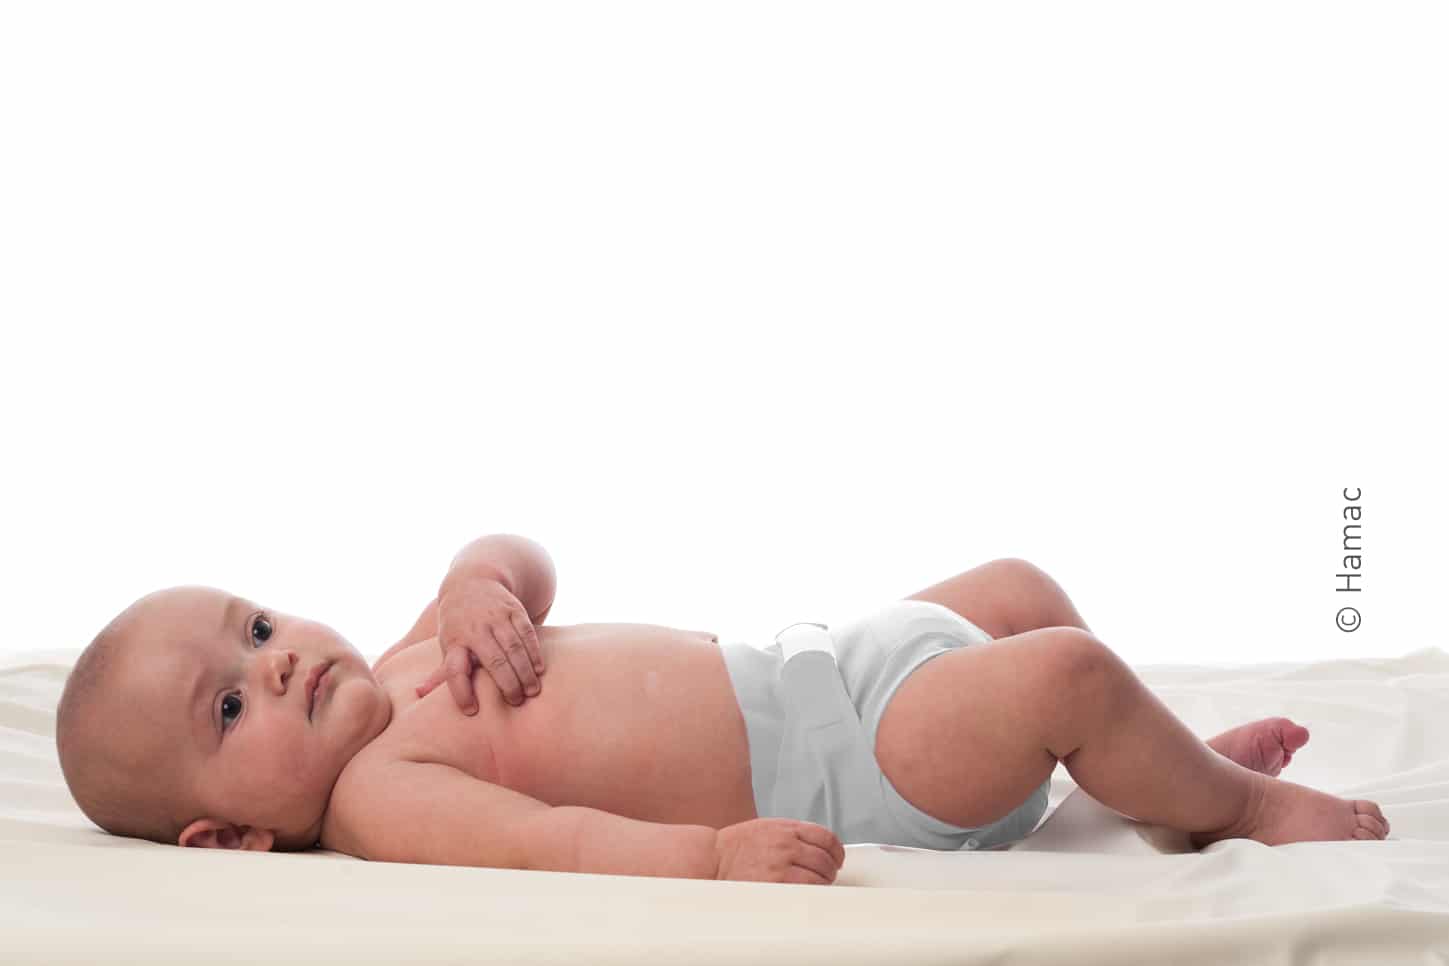 Couches bébé : encore trop de résidus toxiques